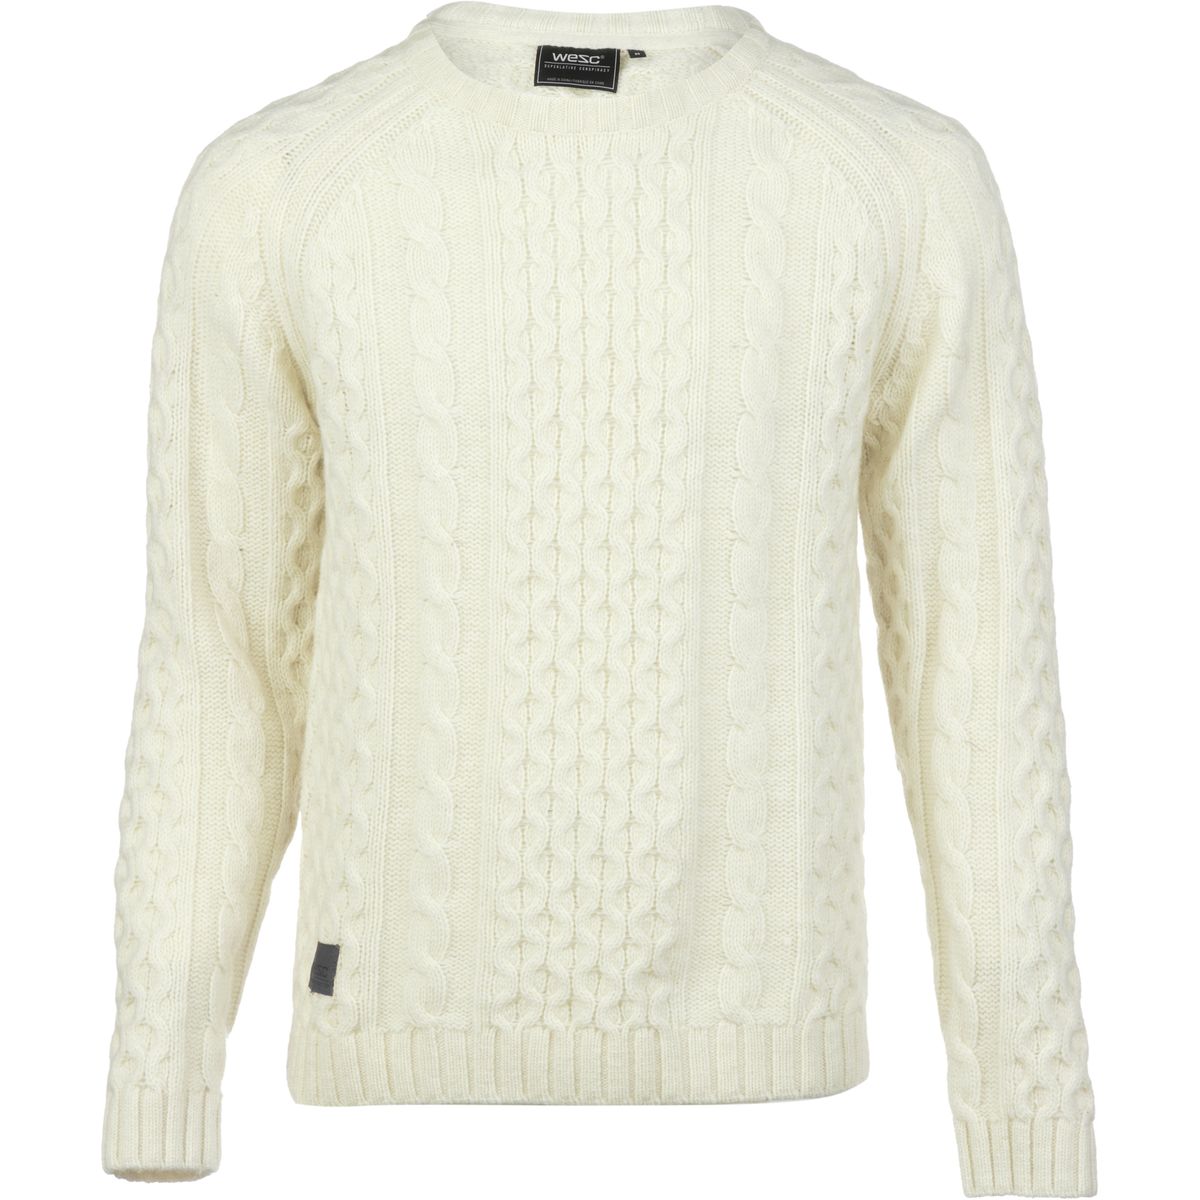 WeSC Cabe Sweater - Men's - Clothing